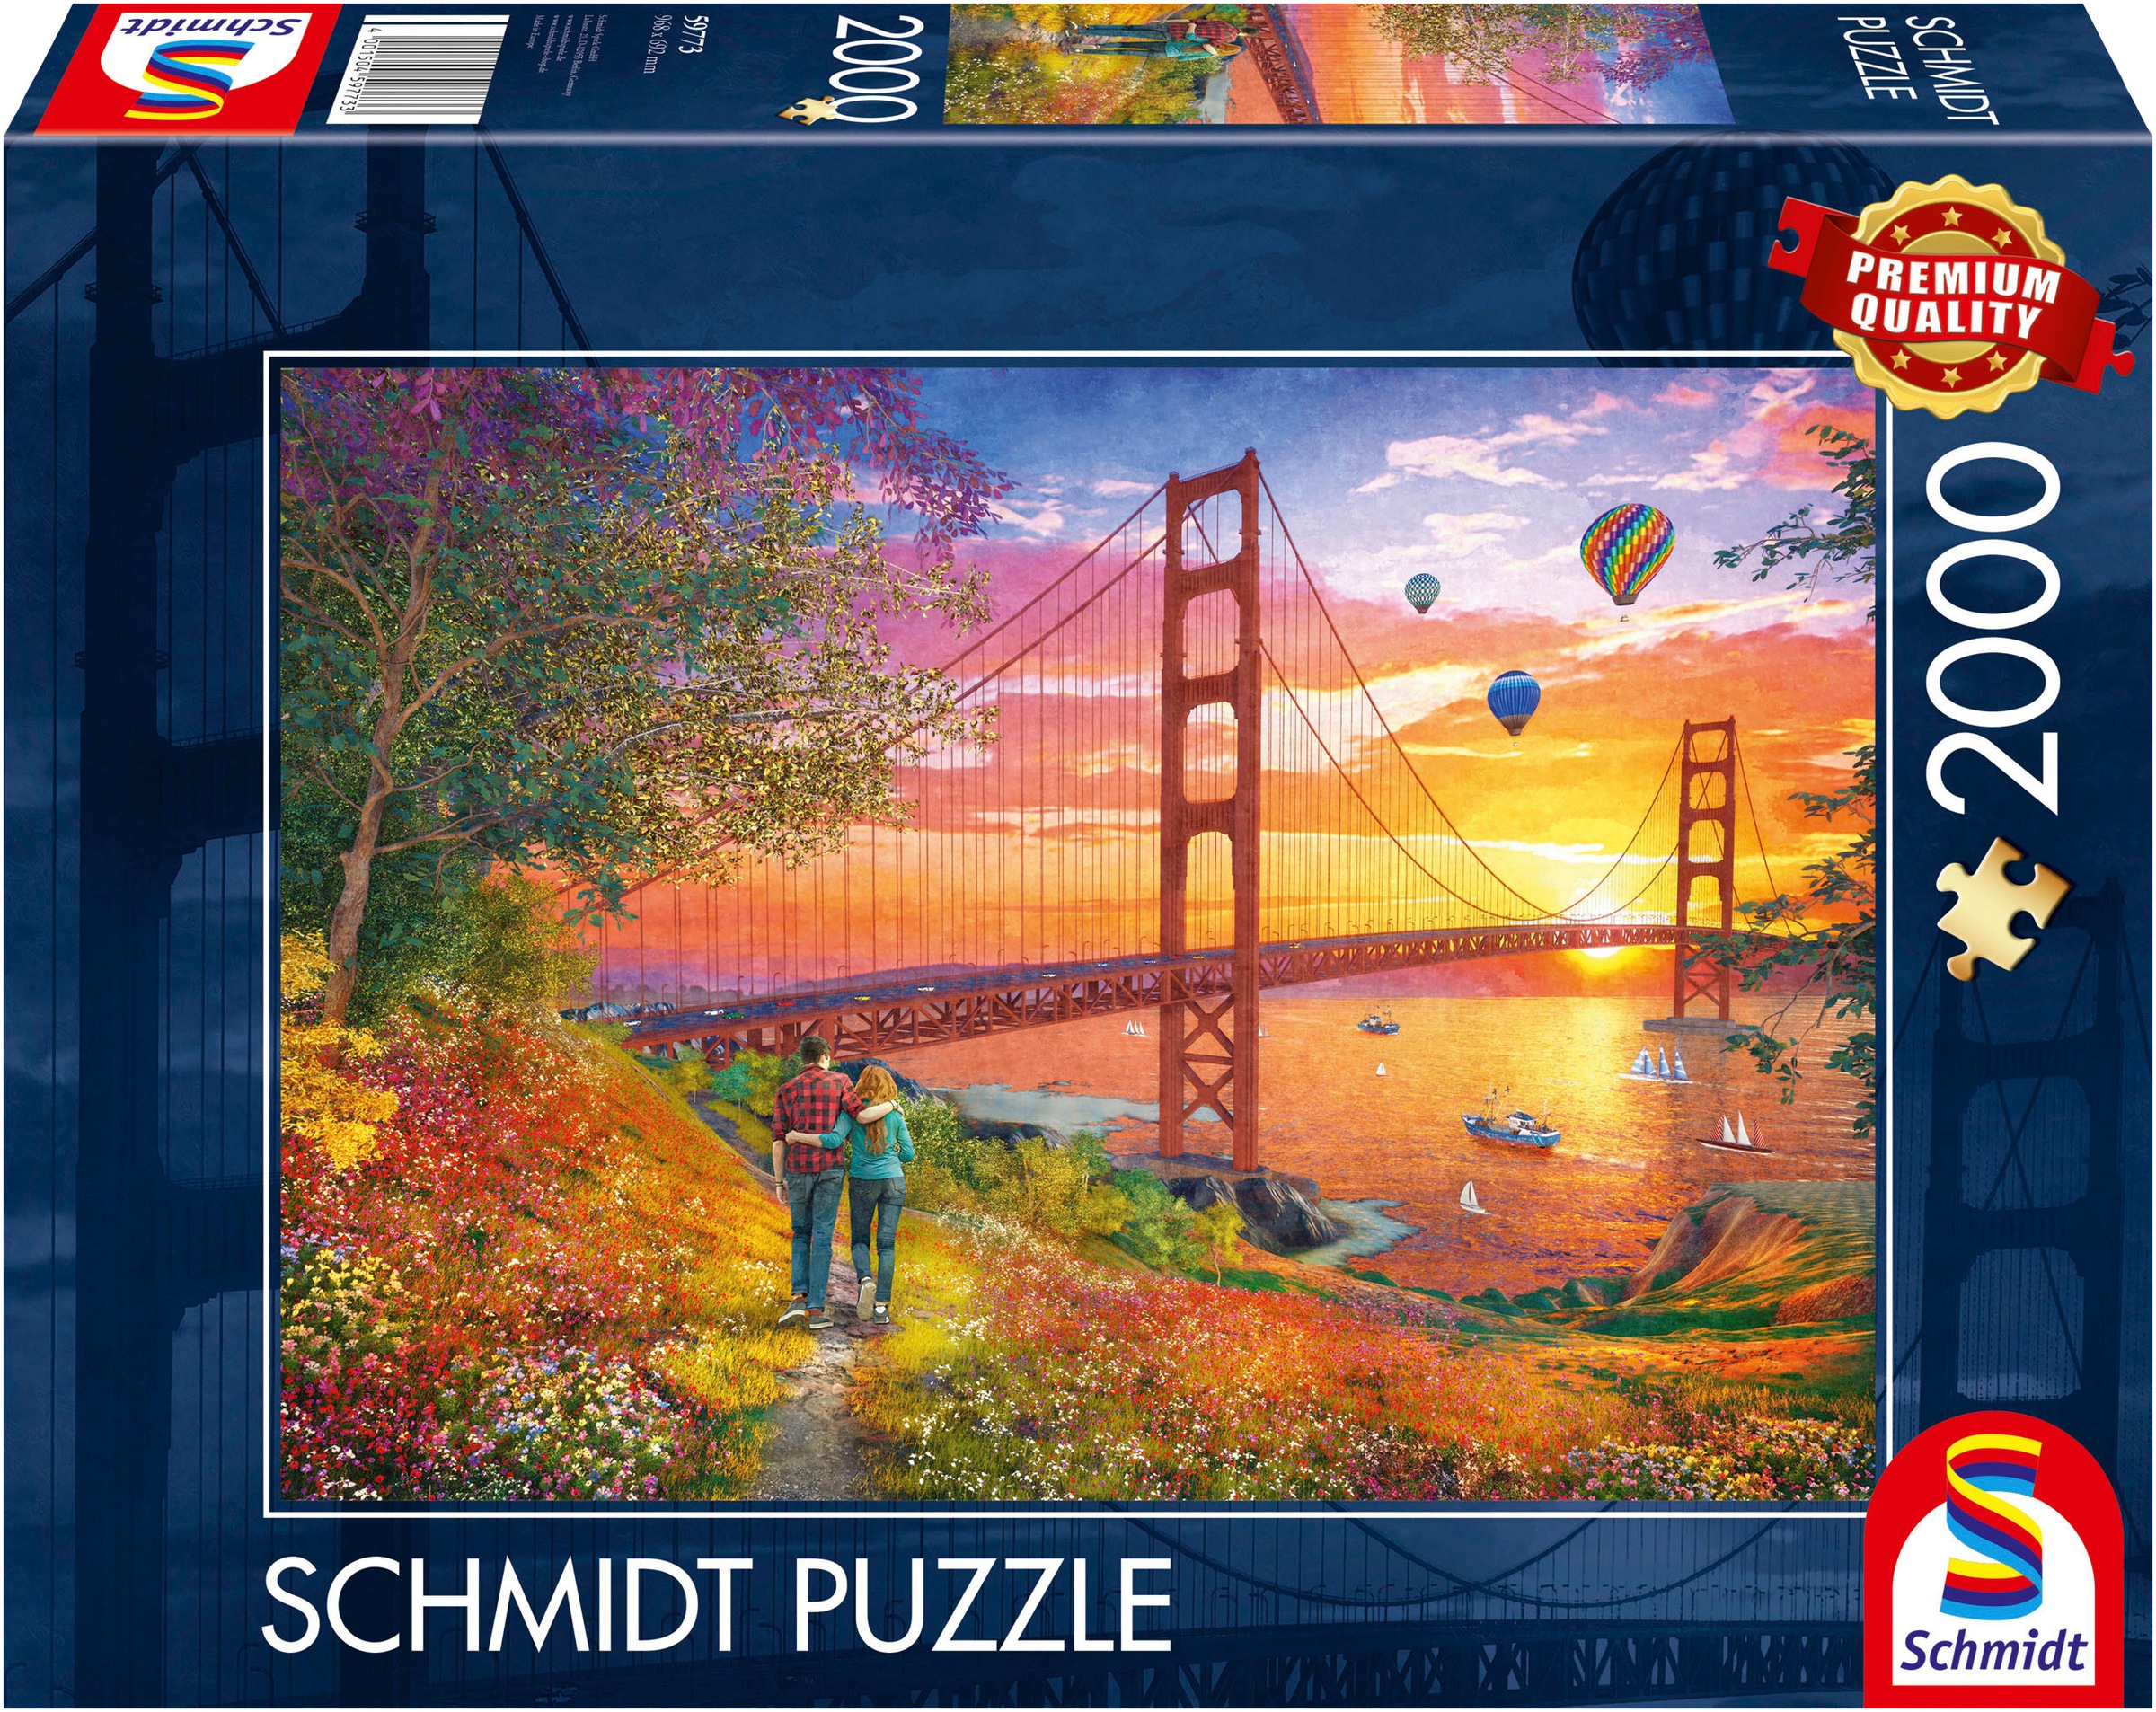 Schmidt Spiele Puzzle »Spaziergang zur Golden Gate Bridge«